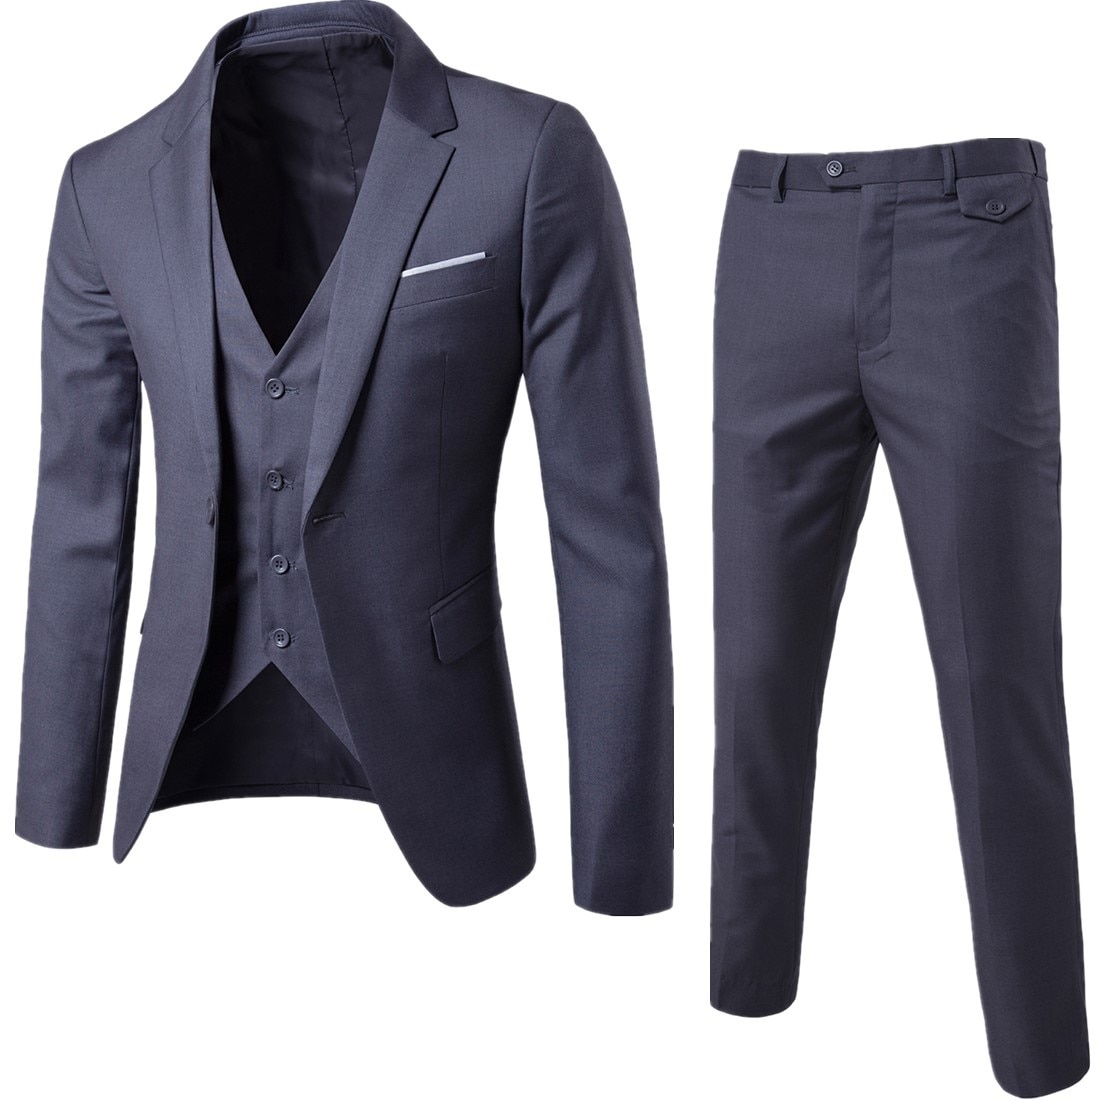 2022-New-Men-s-Three-piece-Suit-Suit-Suit-Men-s-Suit-Korean-Version-Slim-Fit-1.jpg